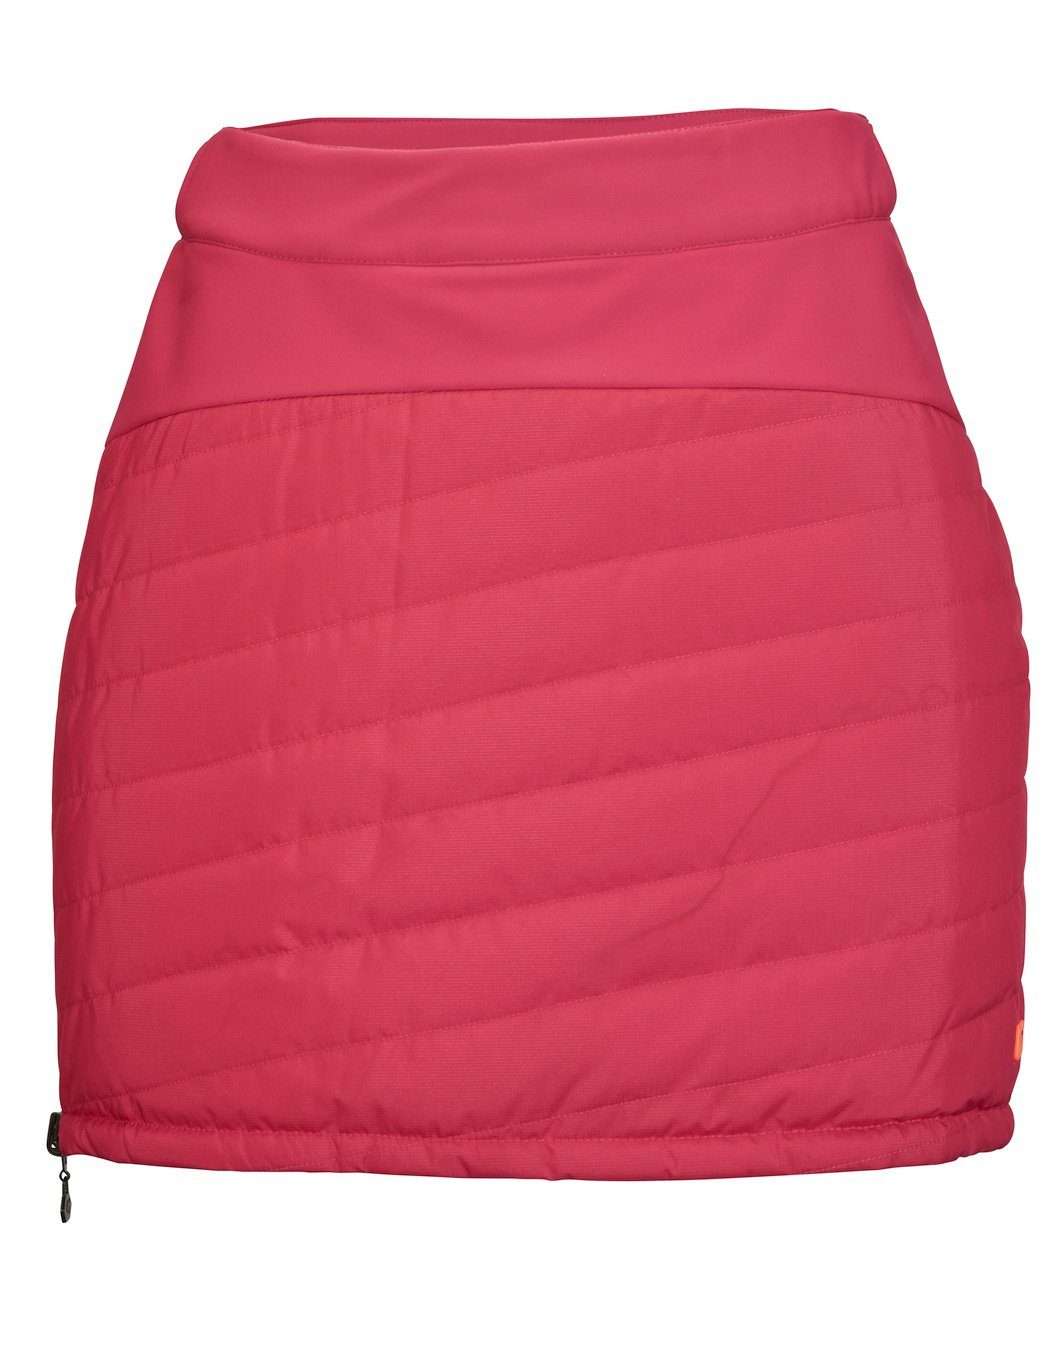 Юбка из трикотажа женская юбка пухового цвета KOW 50 WMN QLTD SKRT